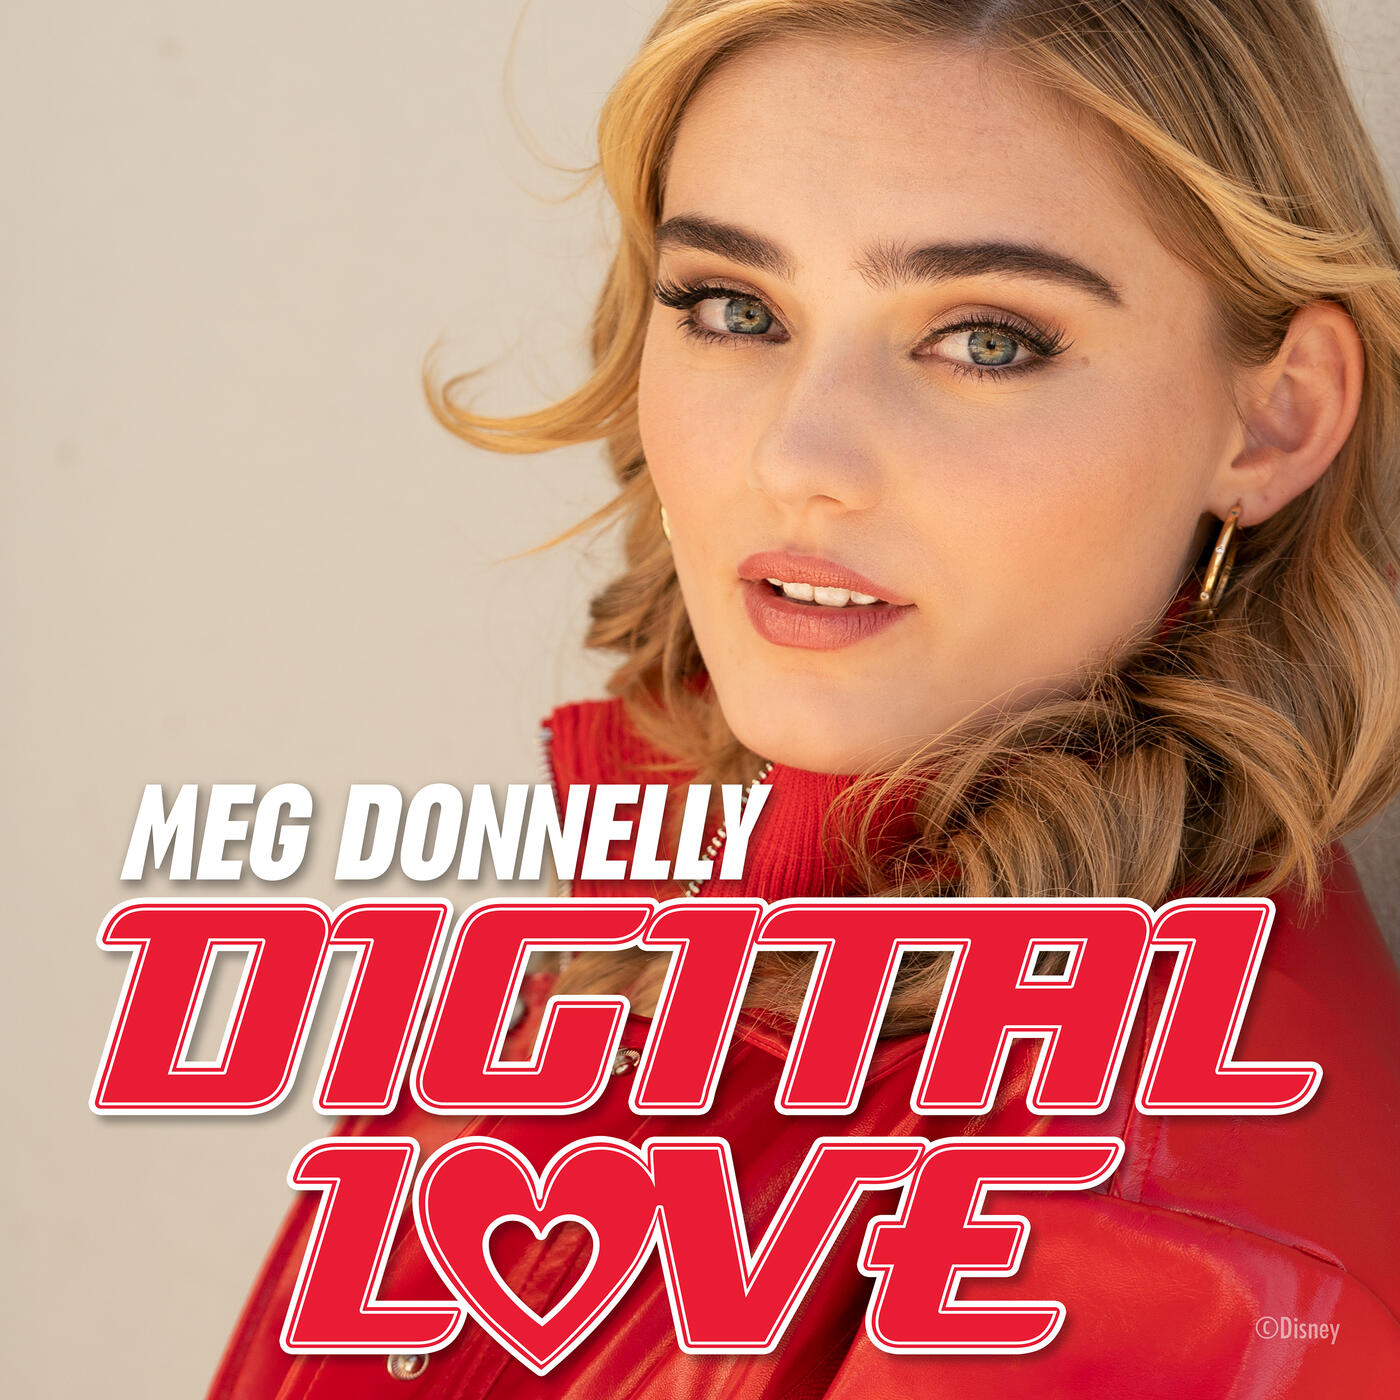 Meg Donnelly Digital Love Iheart